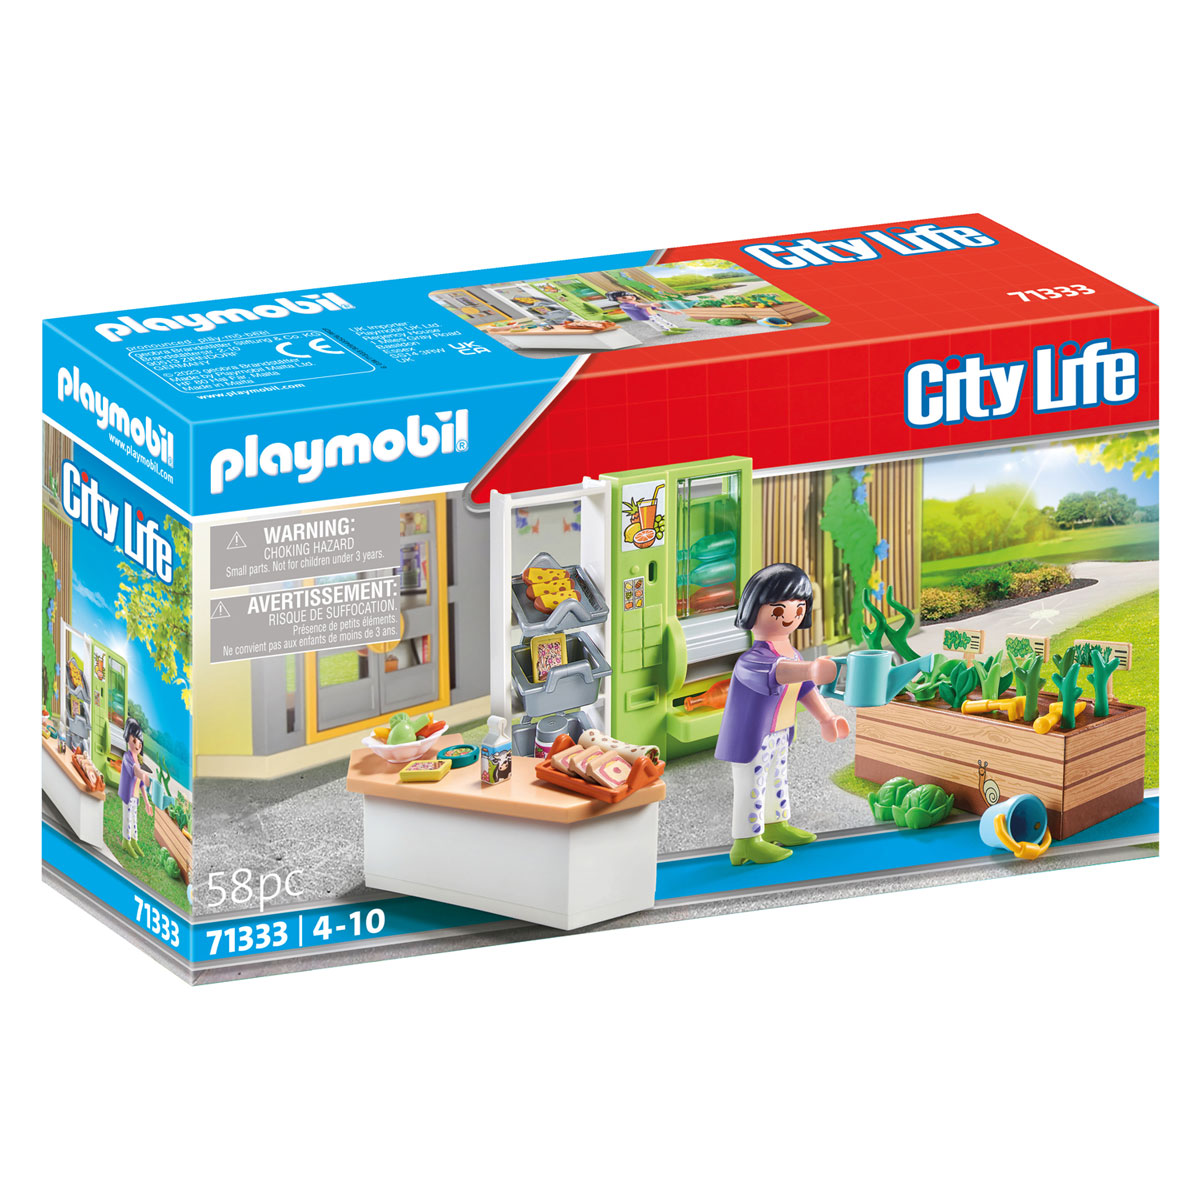 Stand de vente Playmobil City Life - 71333